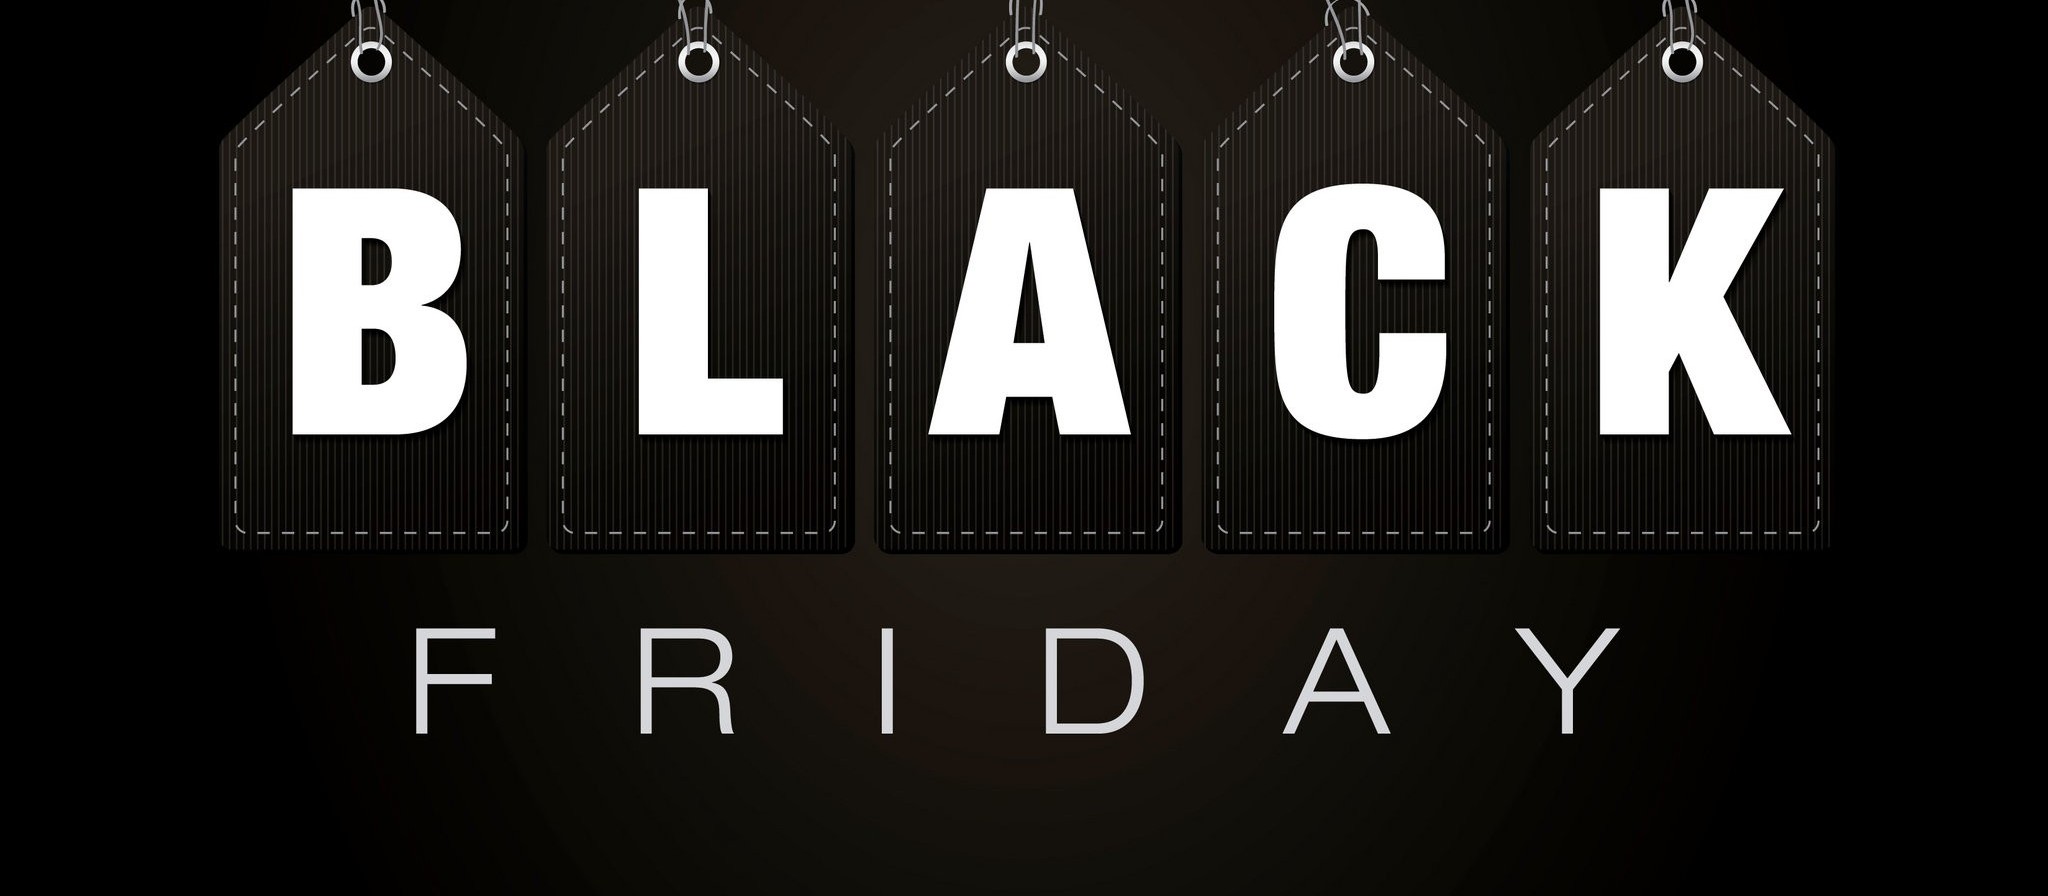 Consumidores da Black Friday devem antecipar pesquisas de preço